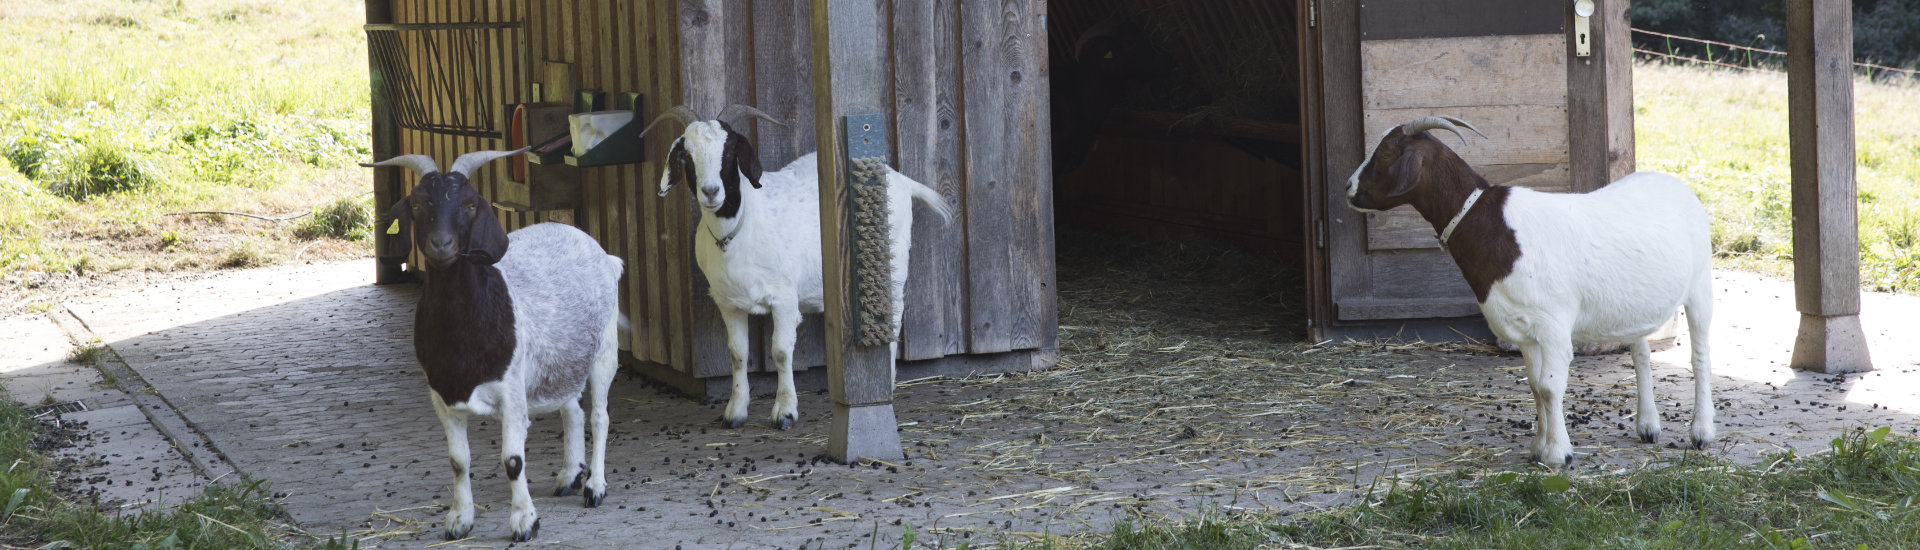 Foto: Ziegen vor einer Hütte am Ziegenpfad